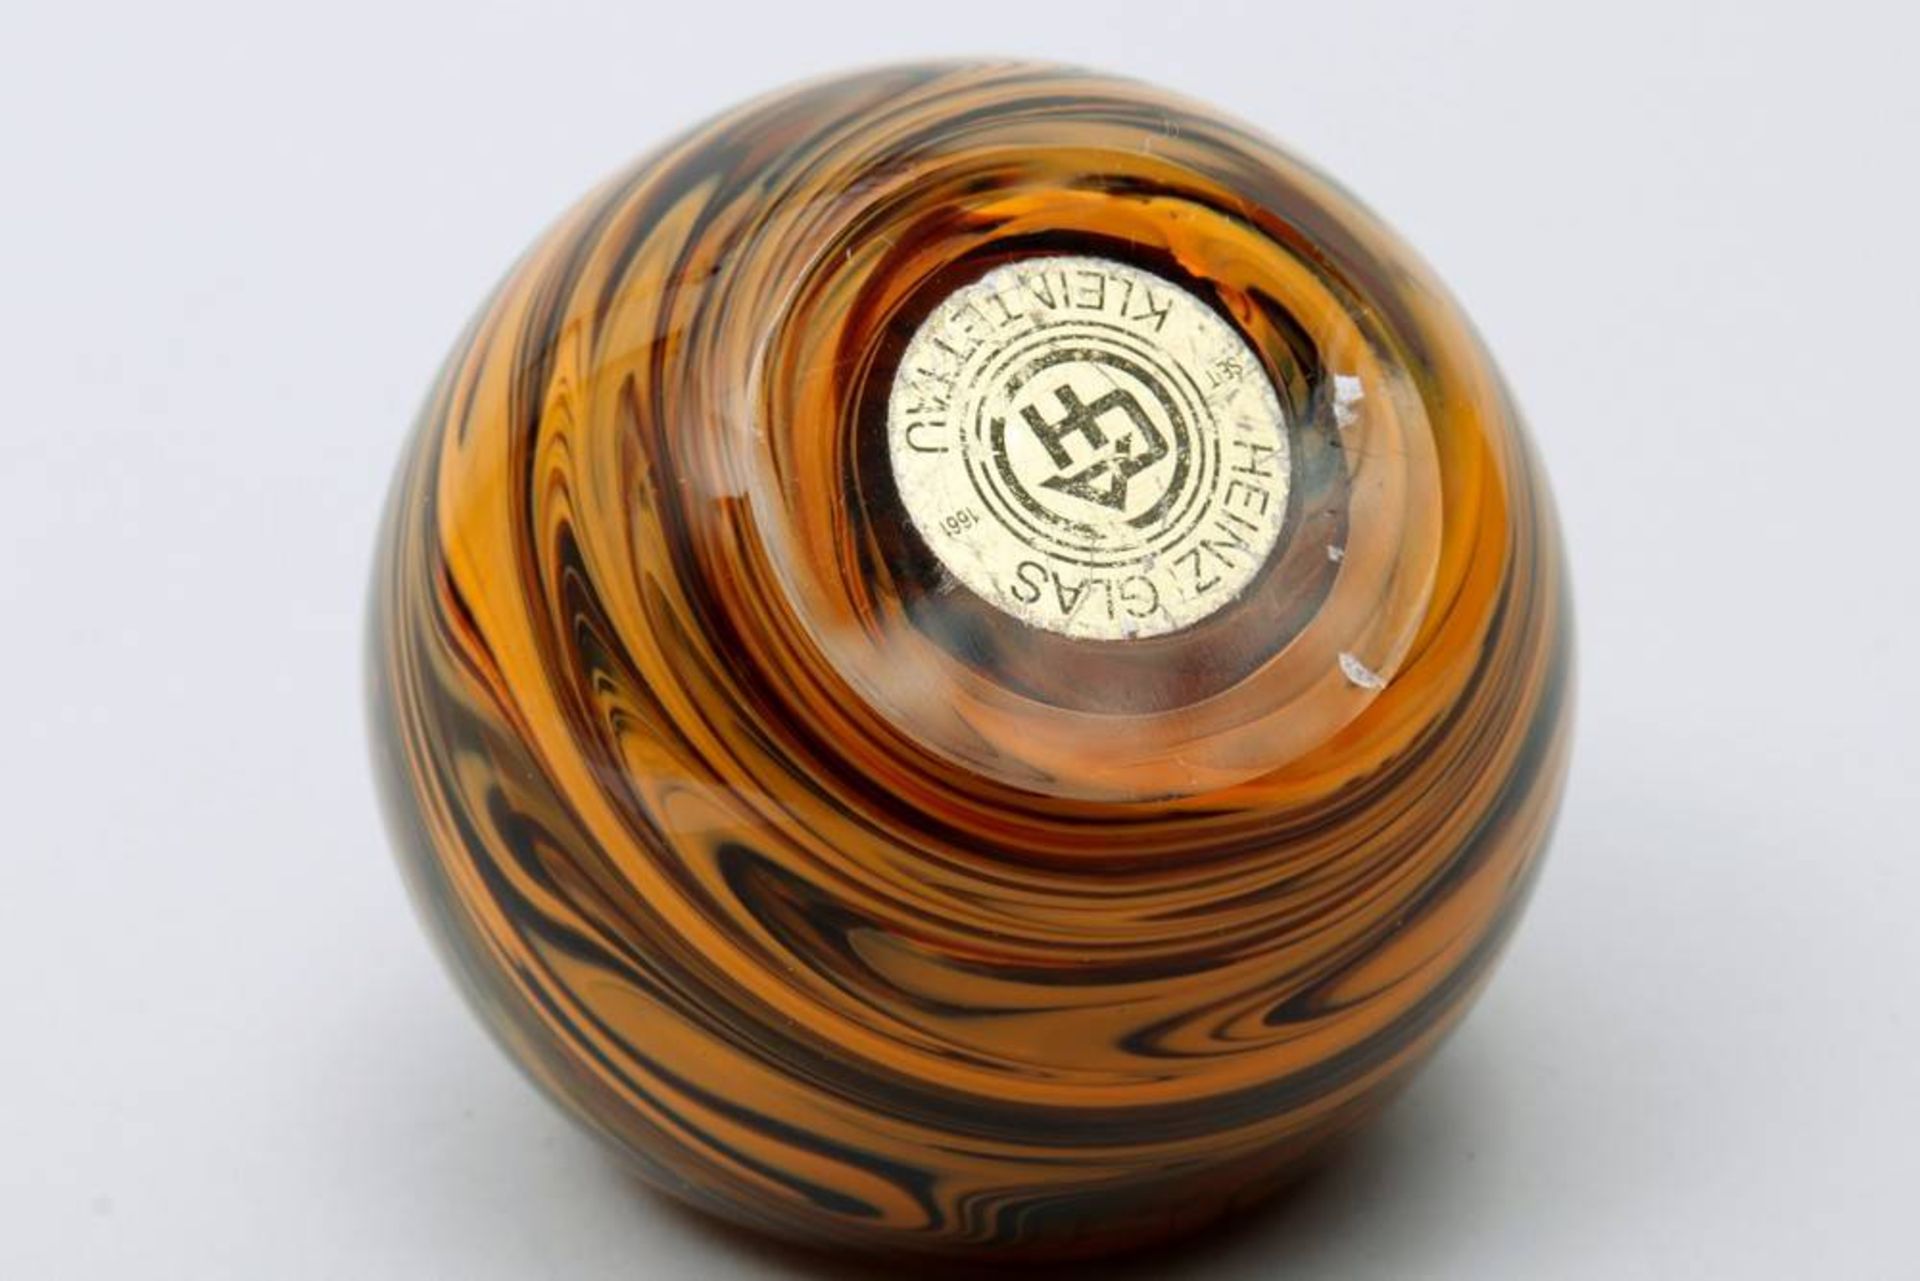 Paperweightca. 1960s, orange and brown inclusions, globe shaped, Heinz Glas - Kleintettau, makers - Bild 2 aus 3